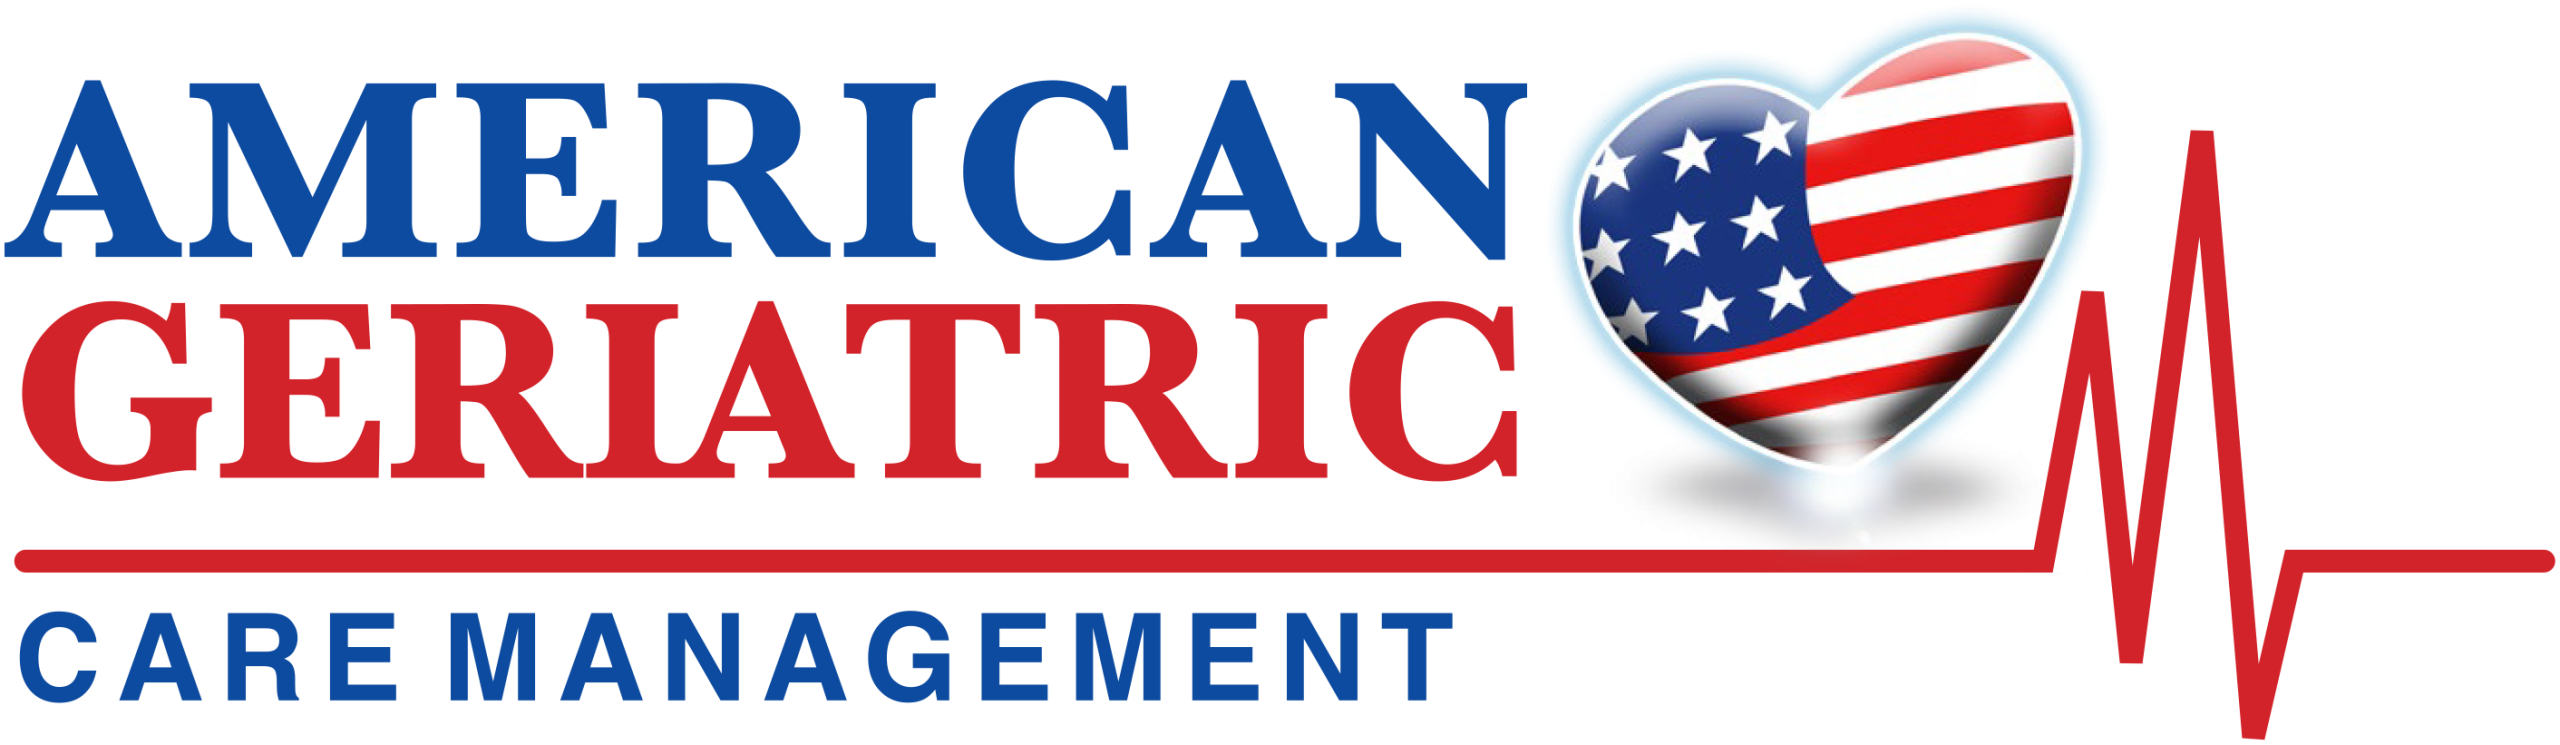 American Geriatric Care Management